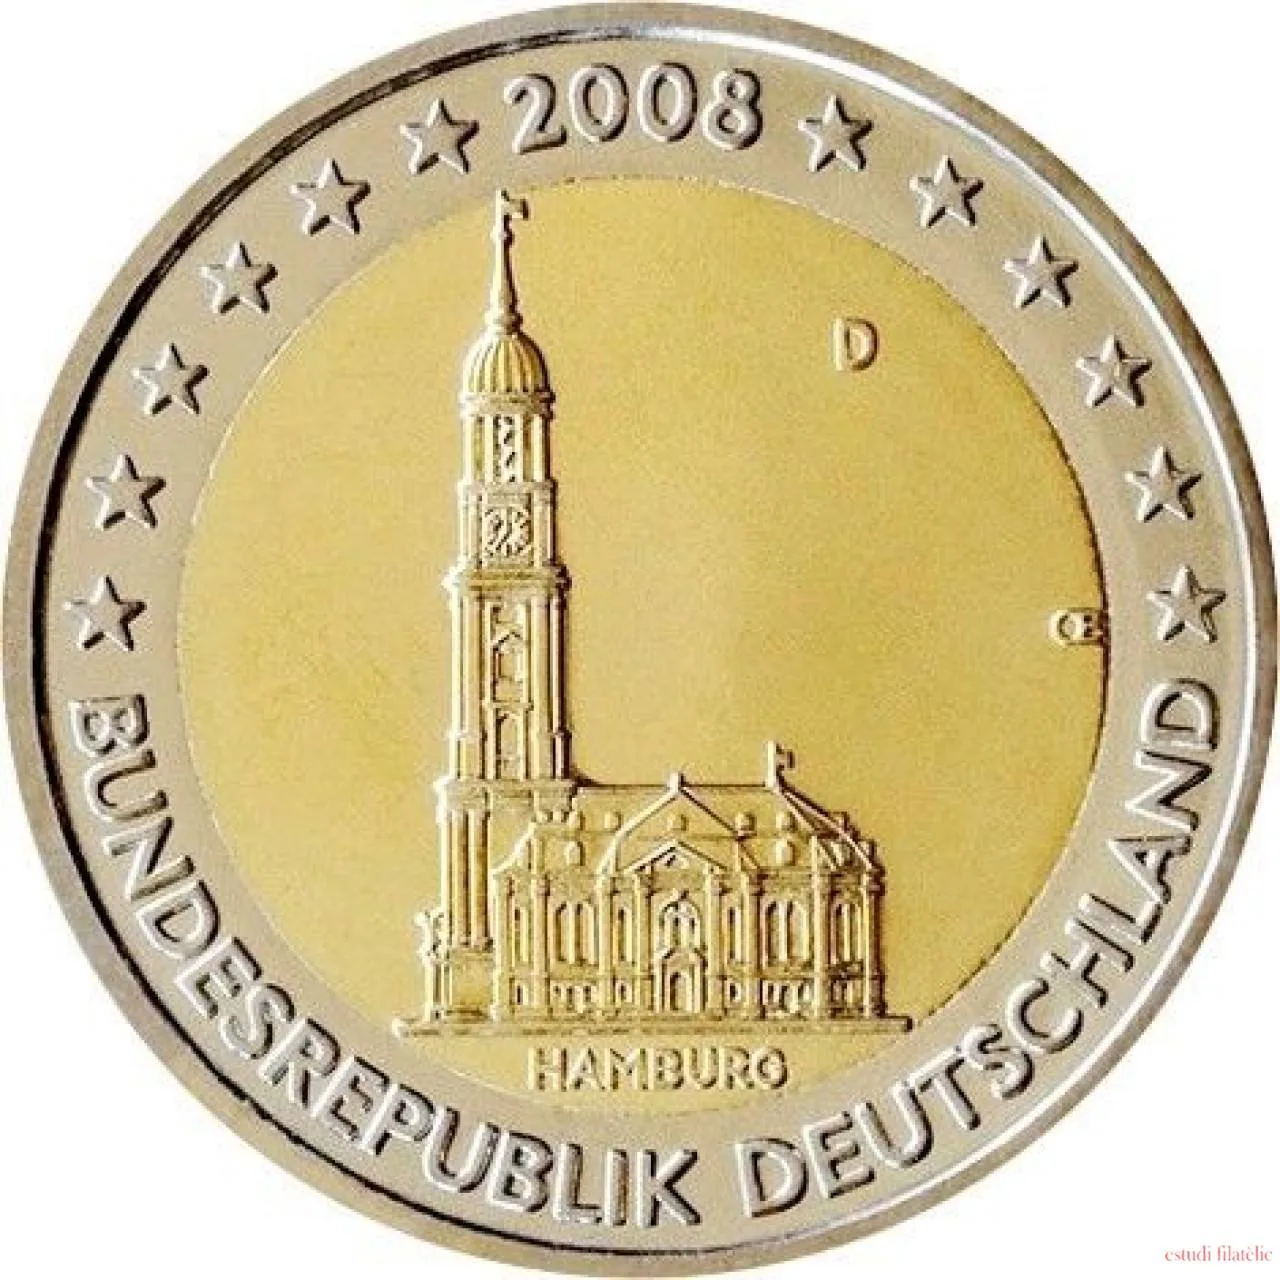 Hay monedas que valen mucho más del número que llevan impreso y el caso de las monedas de 2 euros está causando furor entre los coleccionistas... y entre los que no lo son.